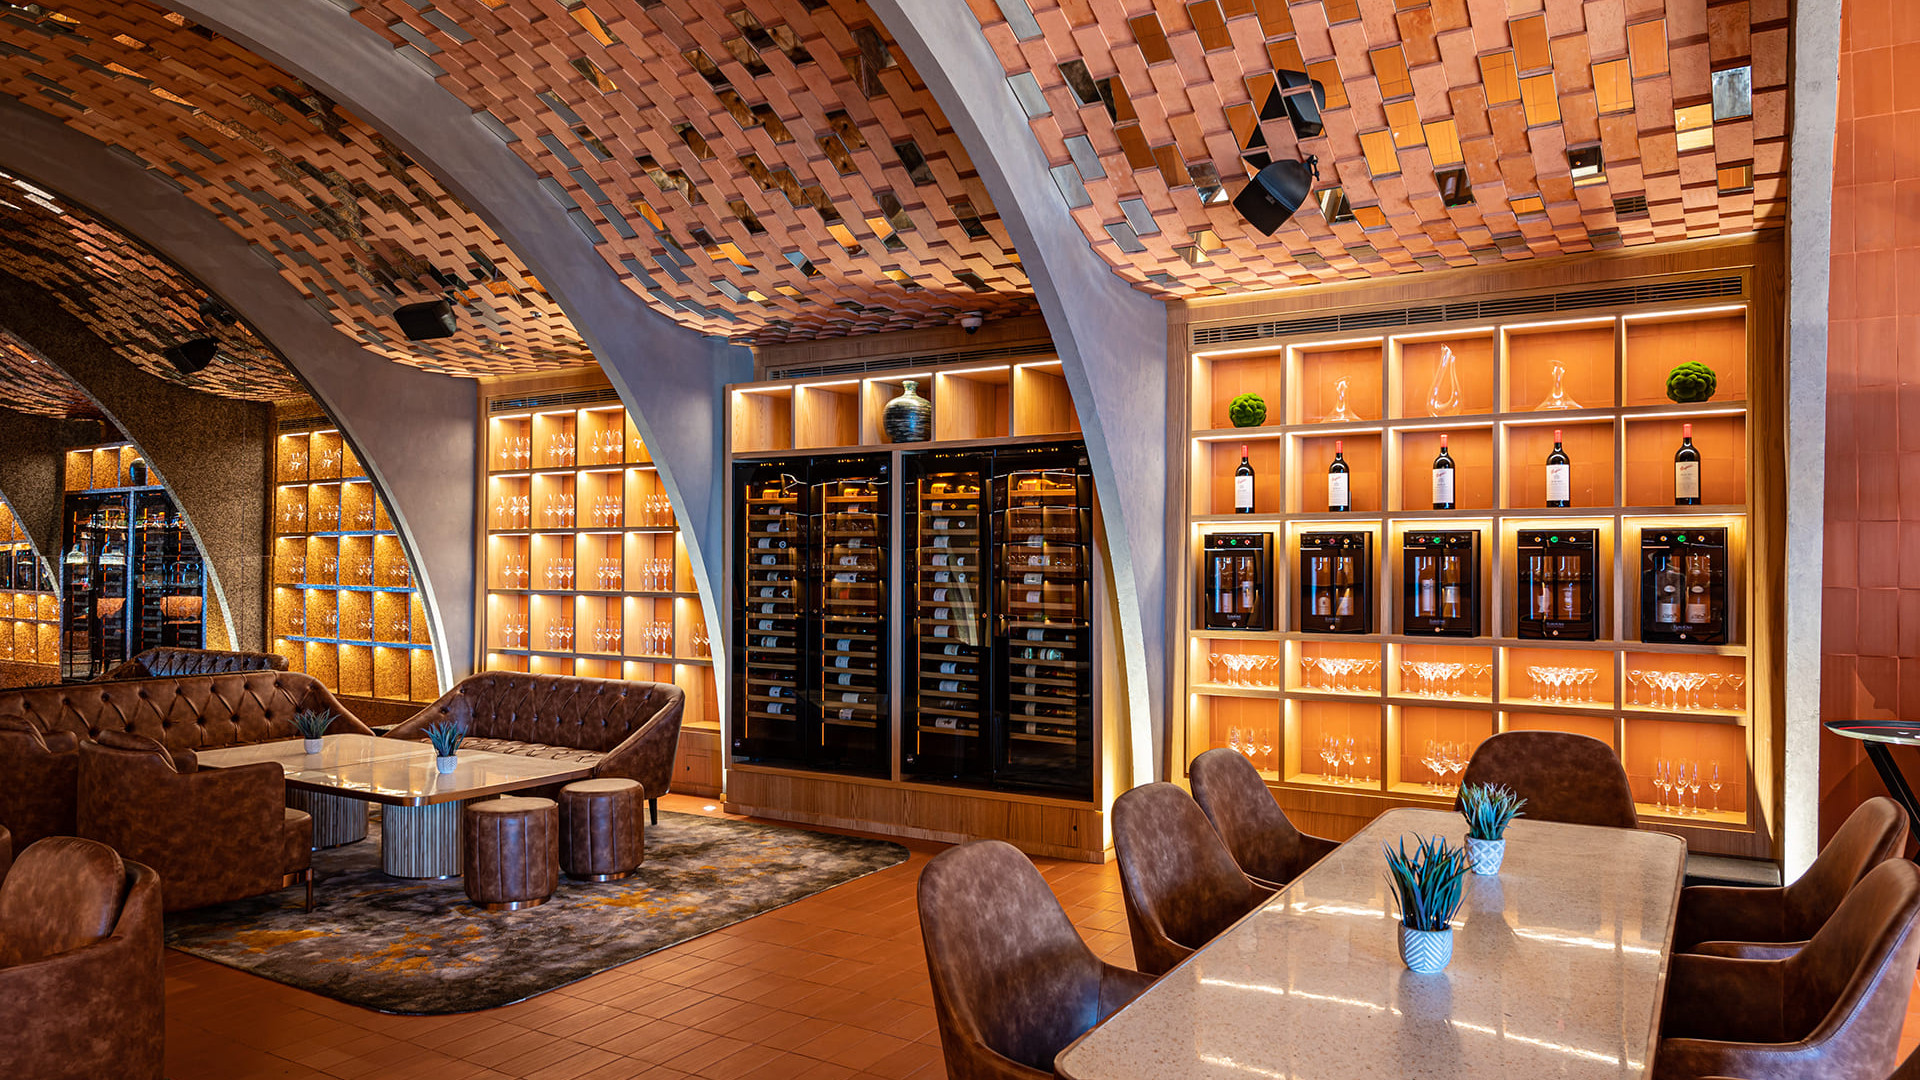 Réalisation d'un projet d'architecture de restaurant intégrant caves à vin et solution de service du vin EuroCave. Inspirations de décoration de restaurants et bars.